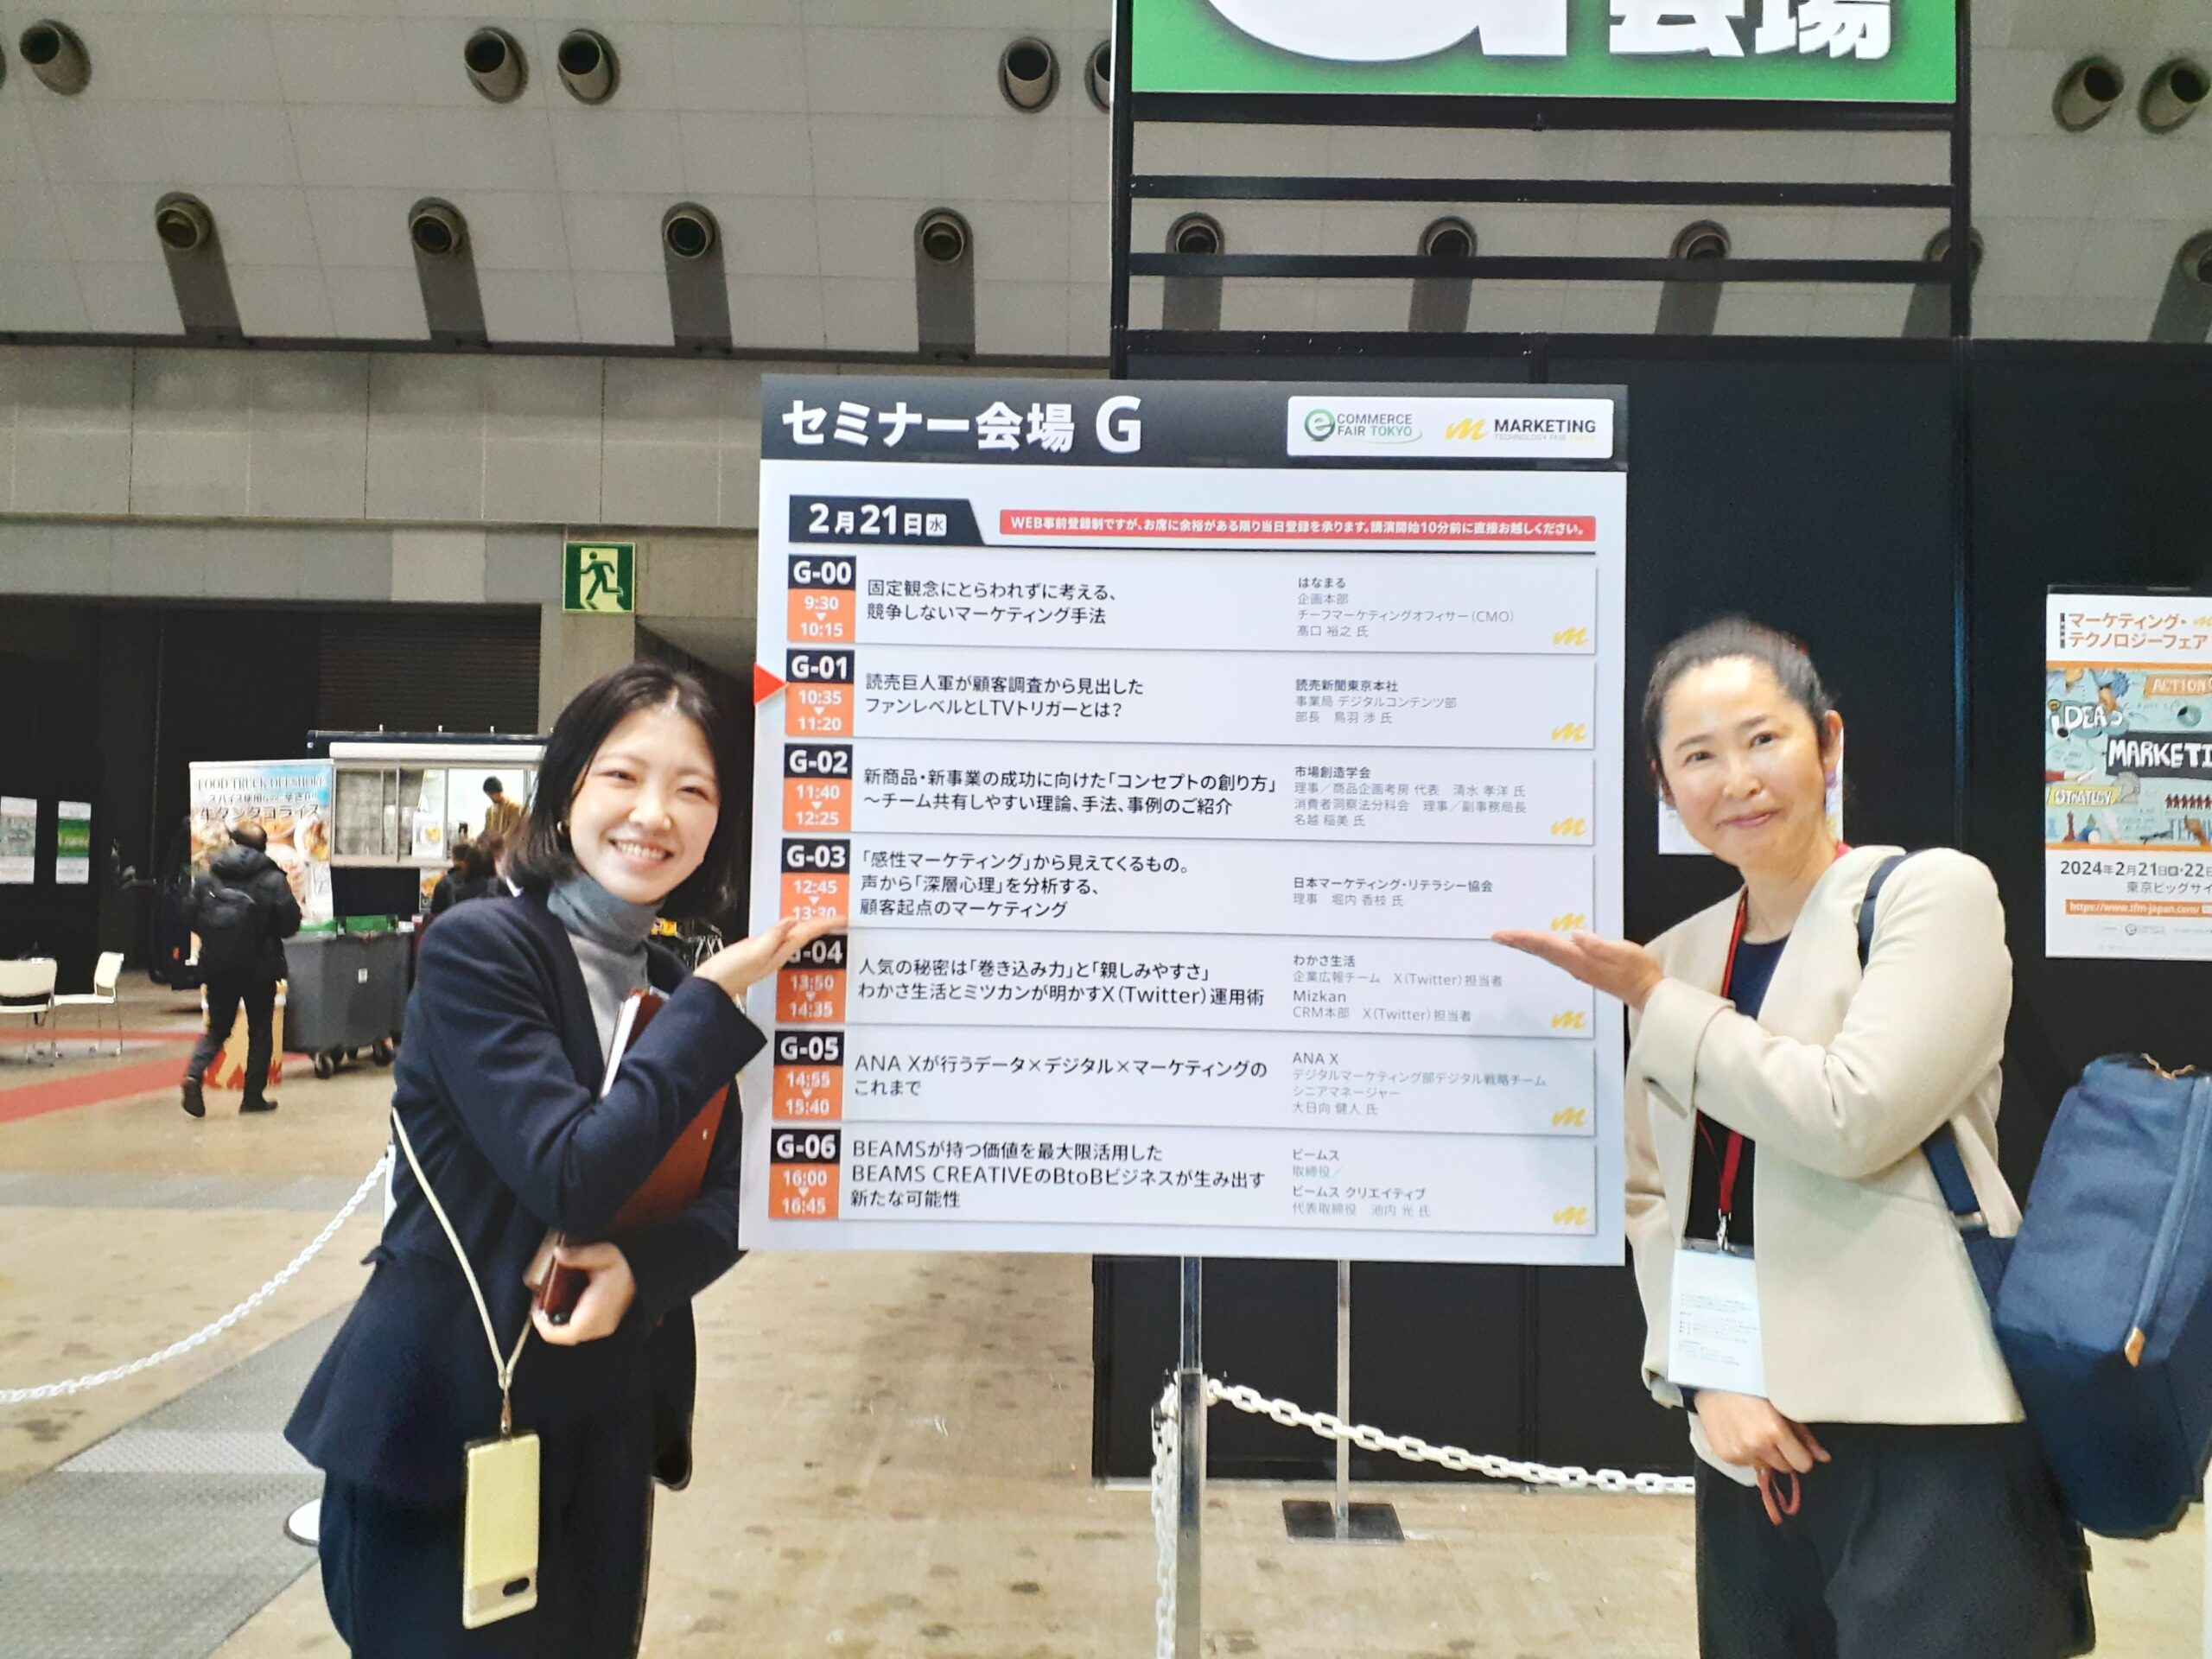 マーケティング・テクノロジーフェア東京2024のセミナー会場Gの前で撮影した記録写真です。弊会を担当してくださった米田様と弊会の講演者が写っています。